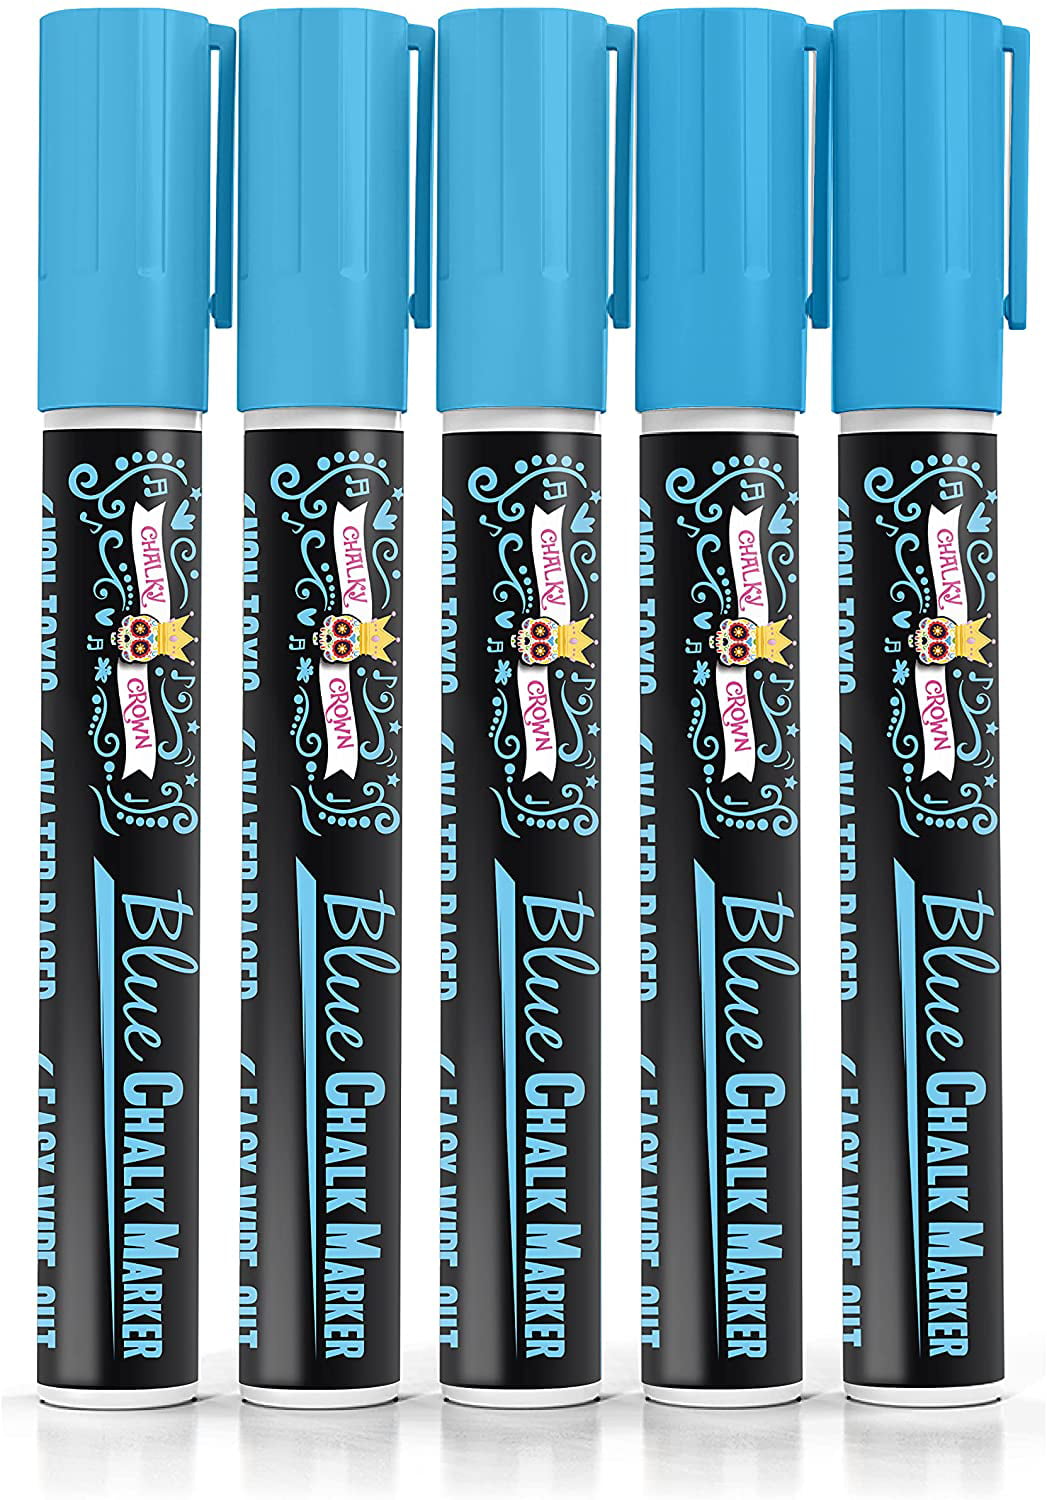 Lenski 21 Chalk Pens for Blackboards – 15 Liquid Chalk Marker(6MM